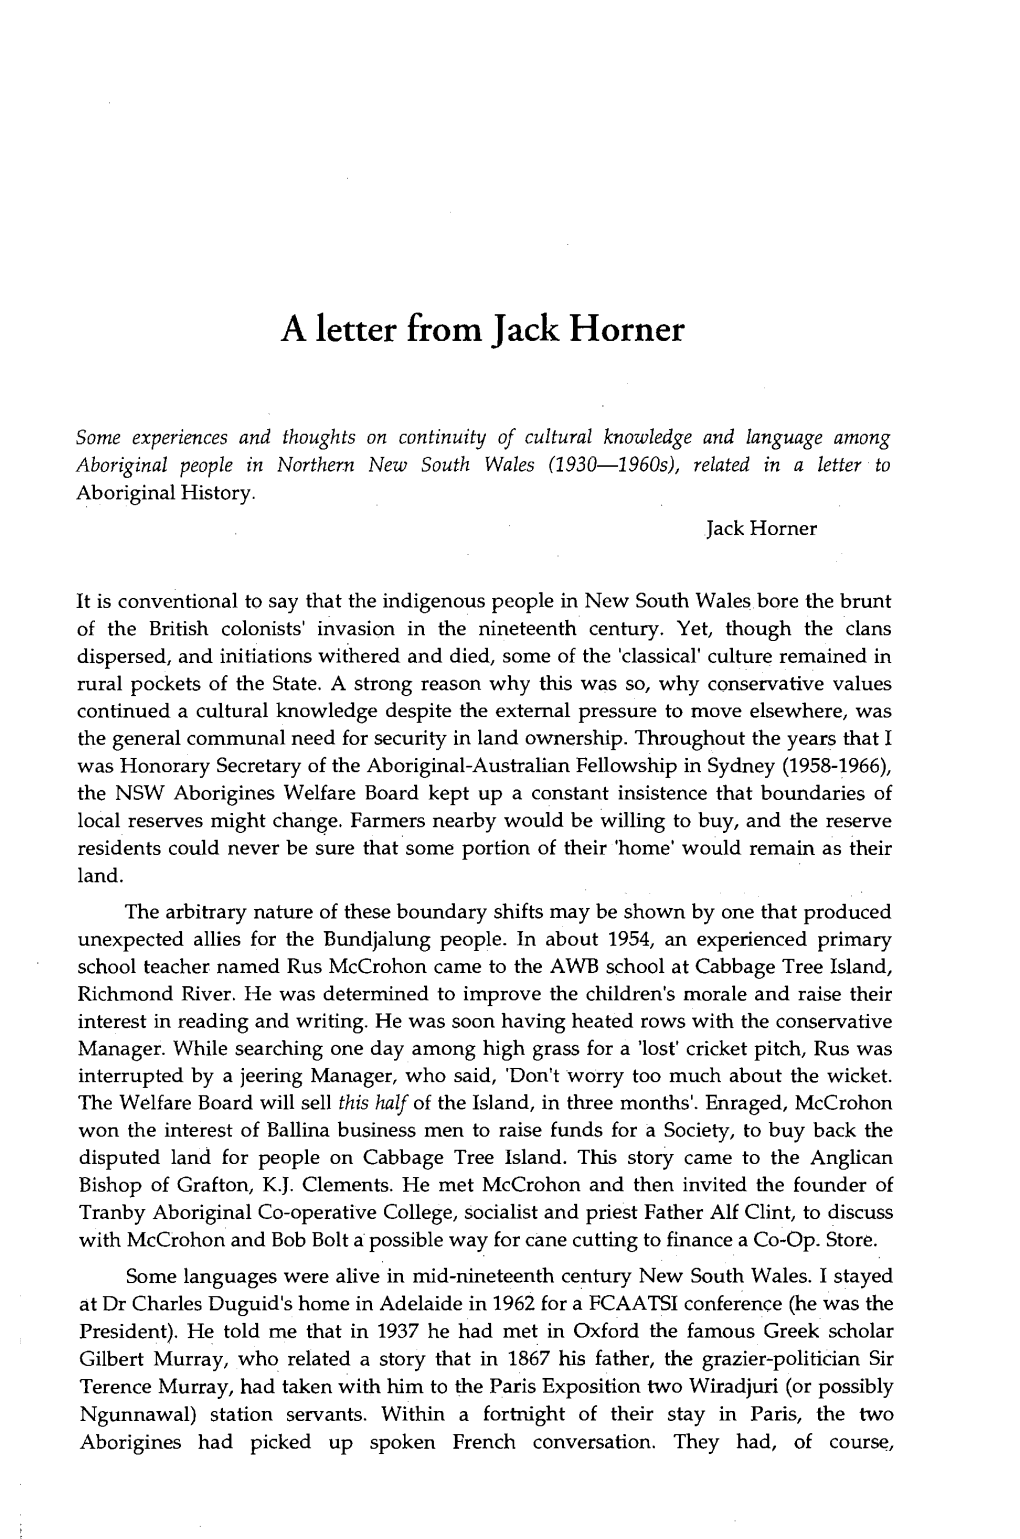 A Letter from Jack Horner